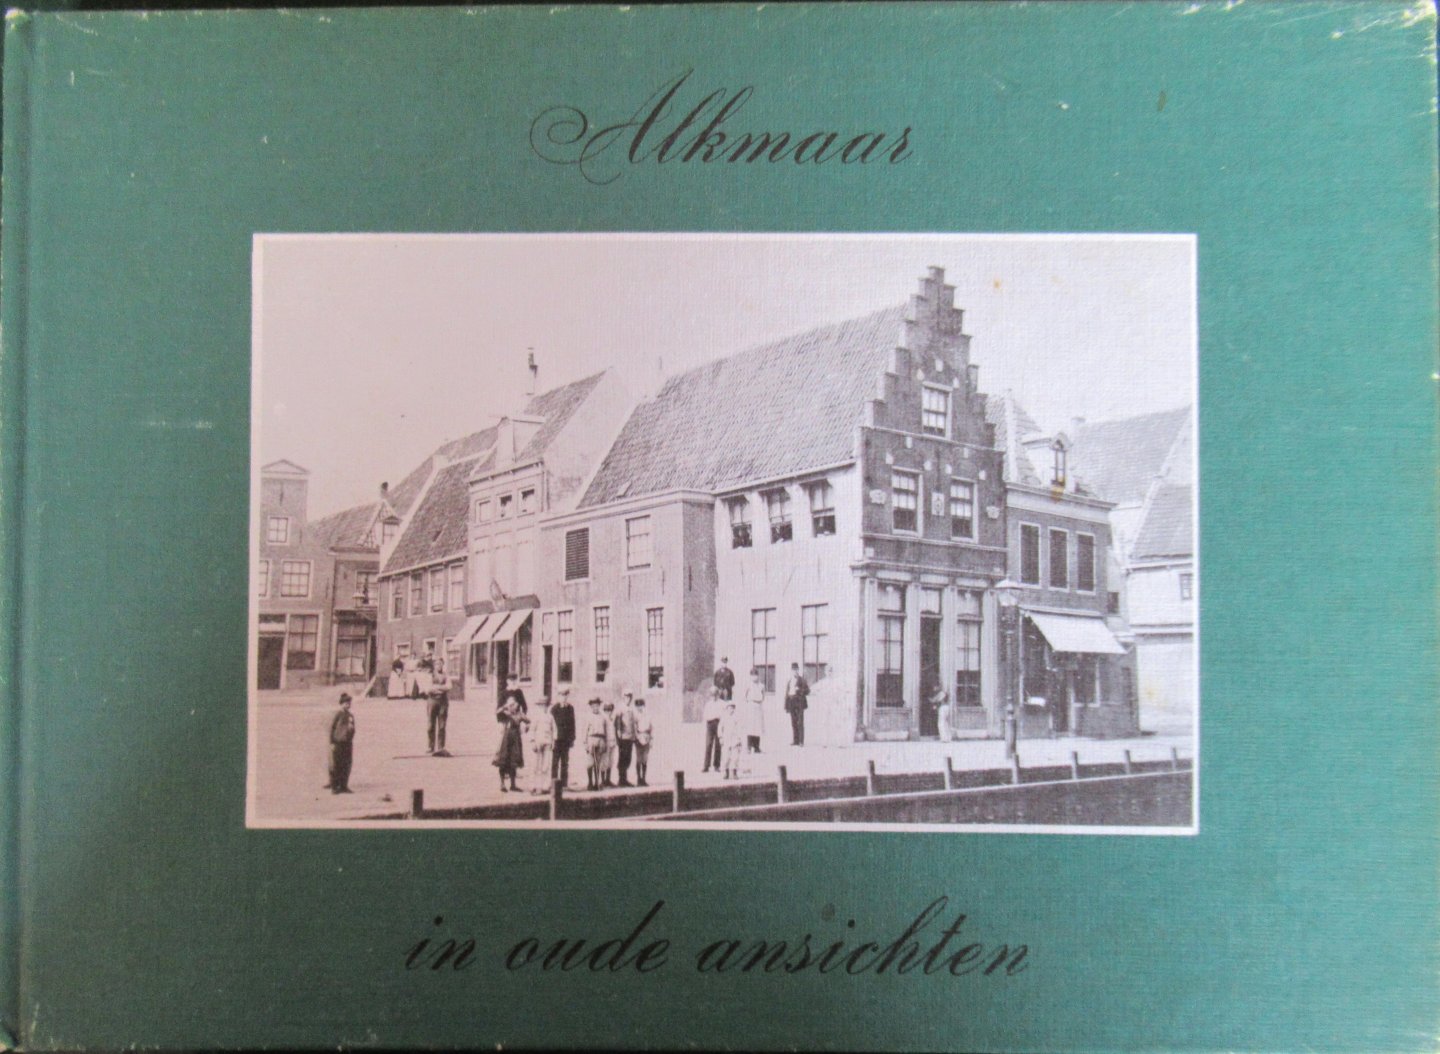 Speur N.J. - Alkmaar in oude ansichten deel 2